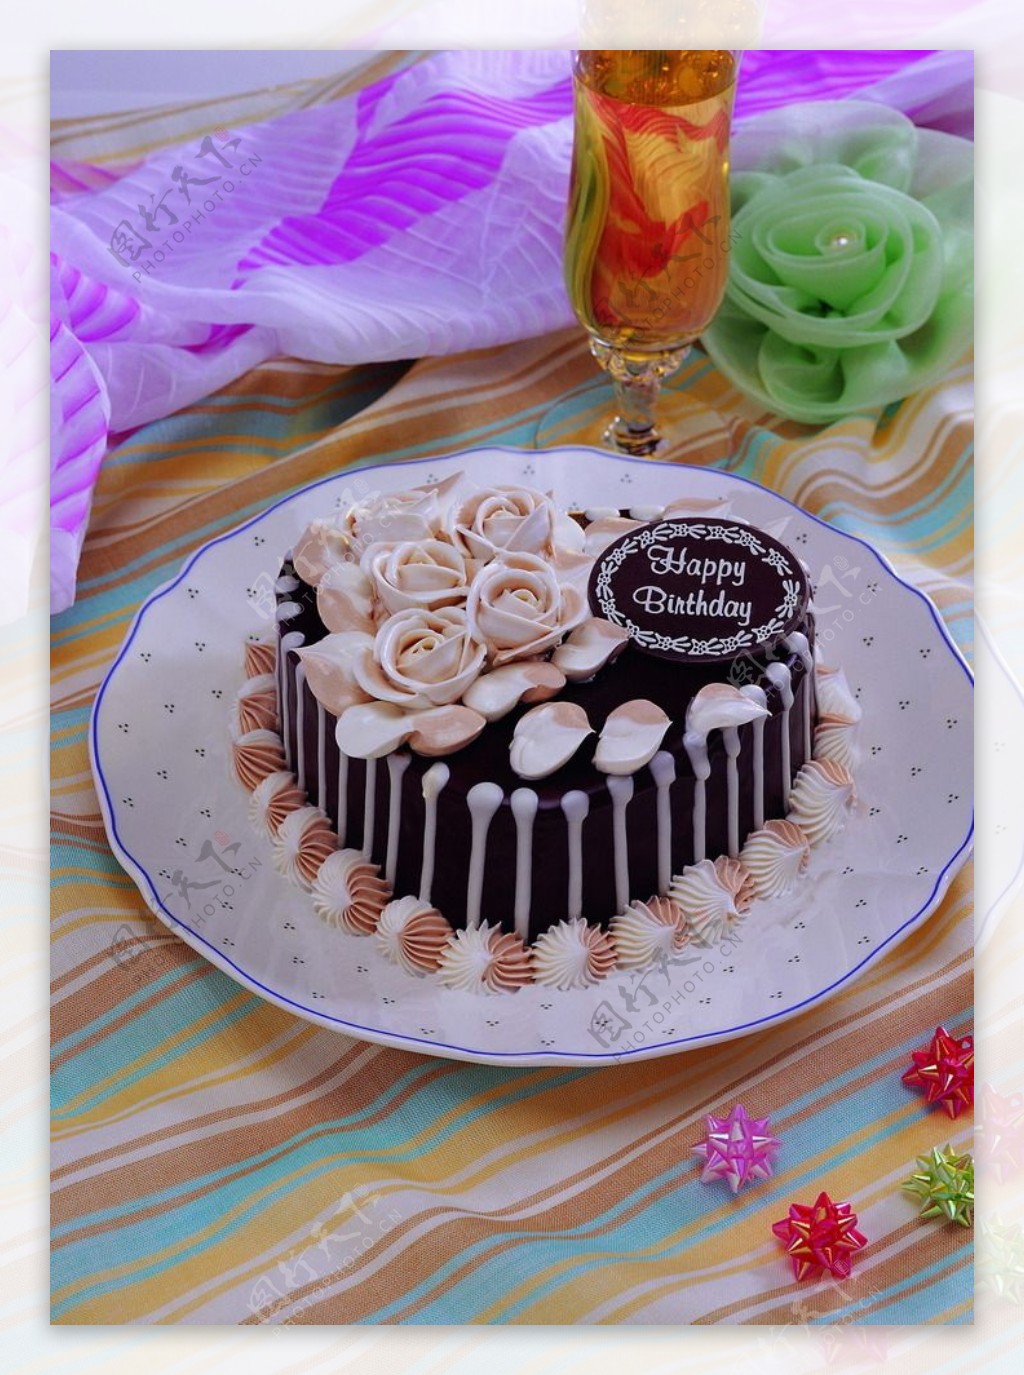 心形的蛋糕 库存照片. 图片 包括有 快餐, 庆祝, 背包, 方旦糖, 节假日, 蛋糕, 红色, 糖果, 嗜好 - 17810828